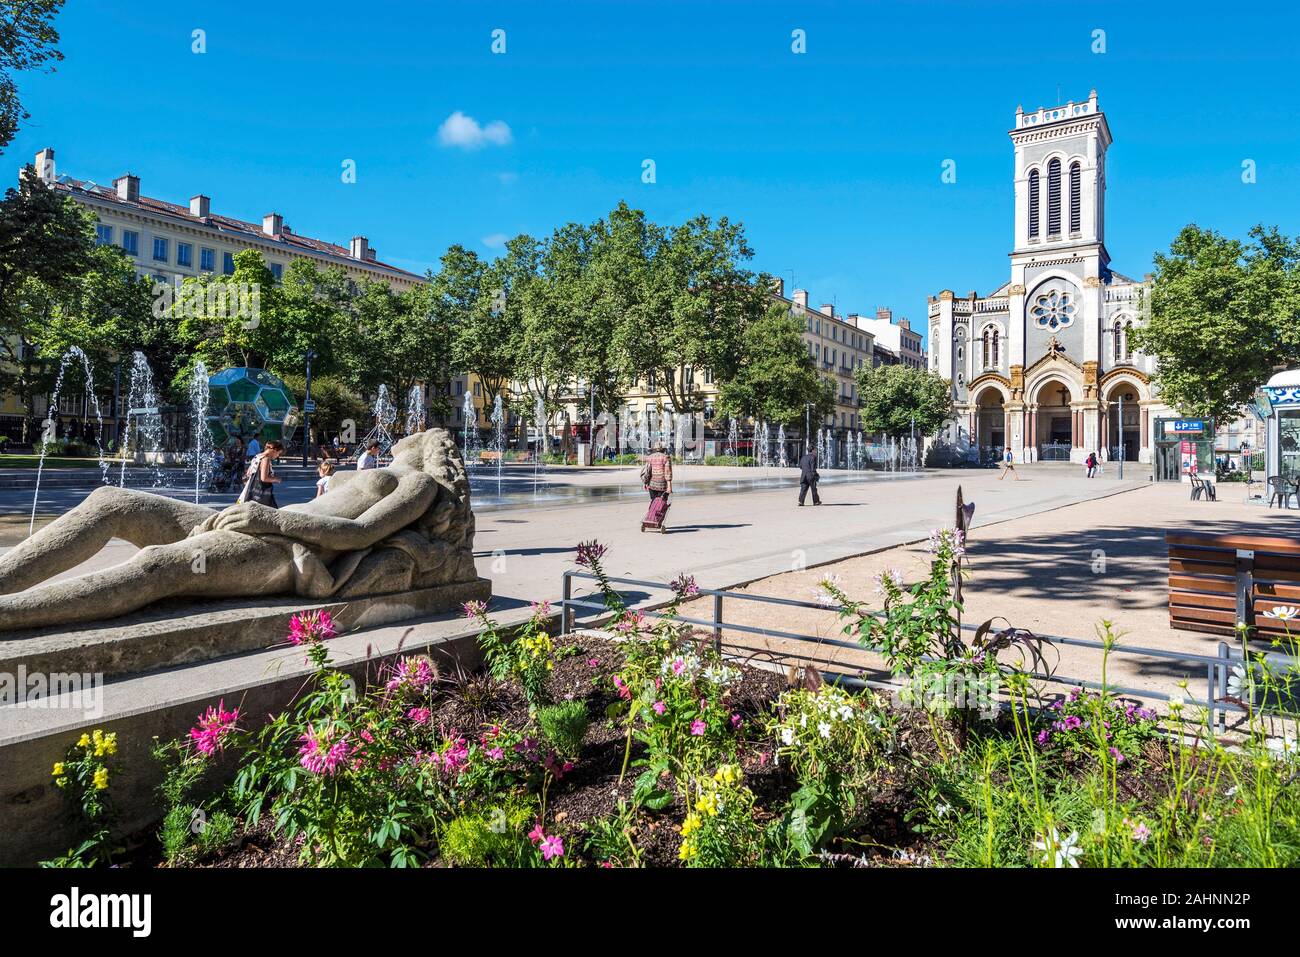 Saint-Etienne, France - le 29 juillet 2019 Le carré de Jean Jaurès à Saint Etienne Centre-ville avec ses fontaines. Morini Andre église catholique est à droite bac Banque D'Images